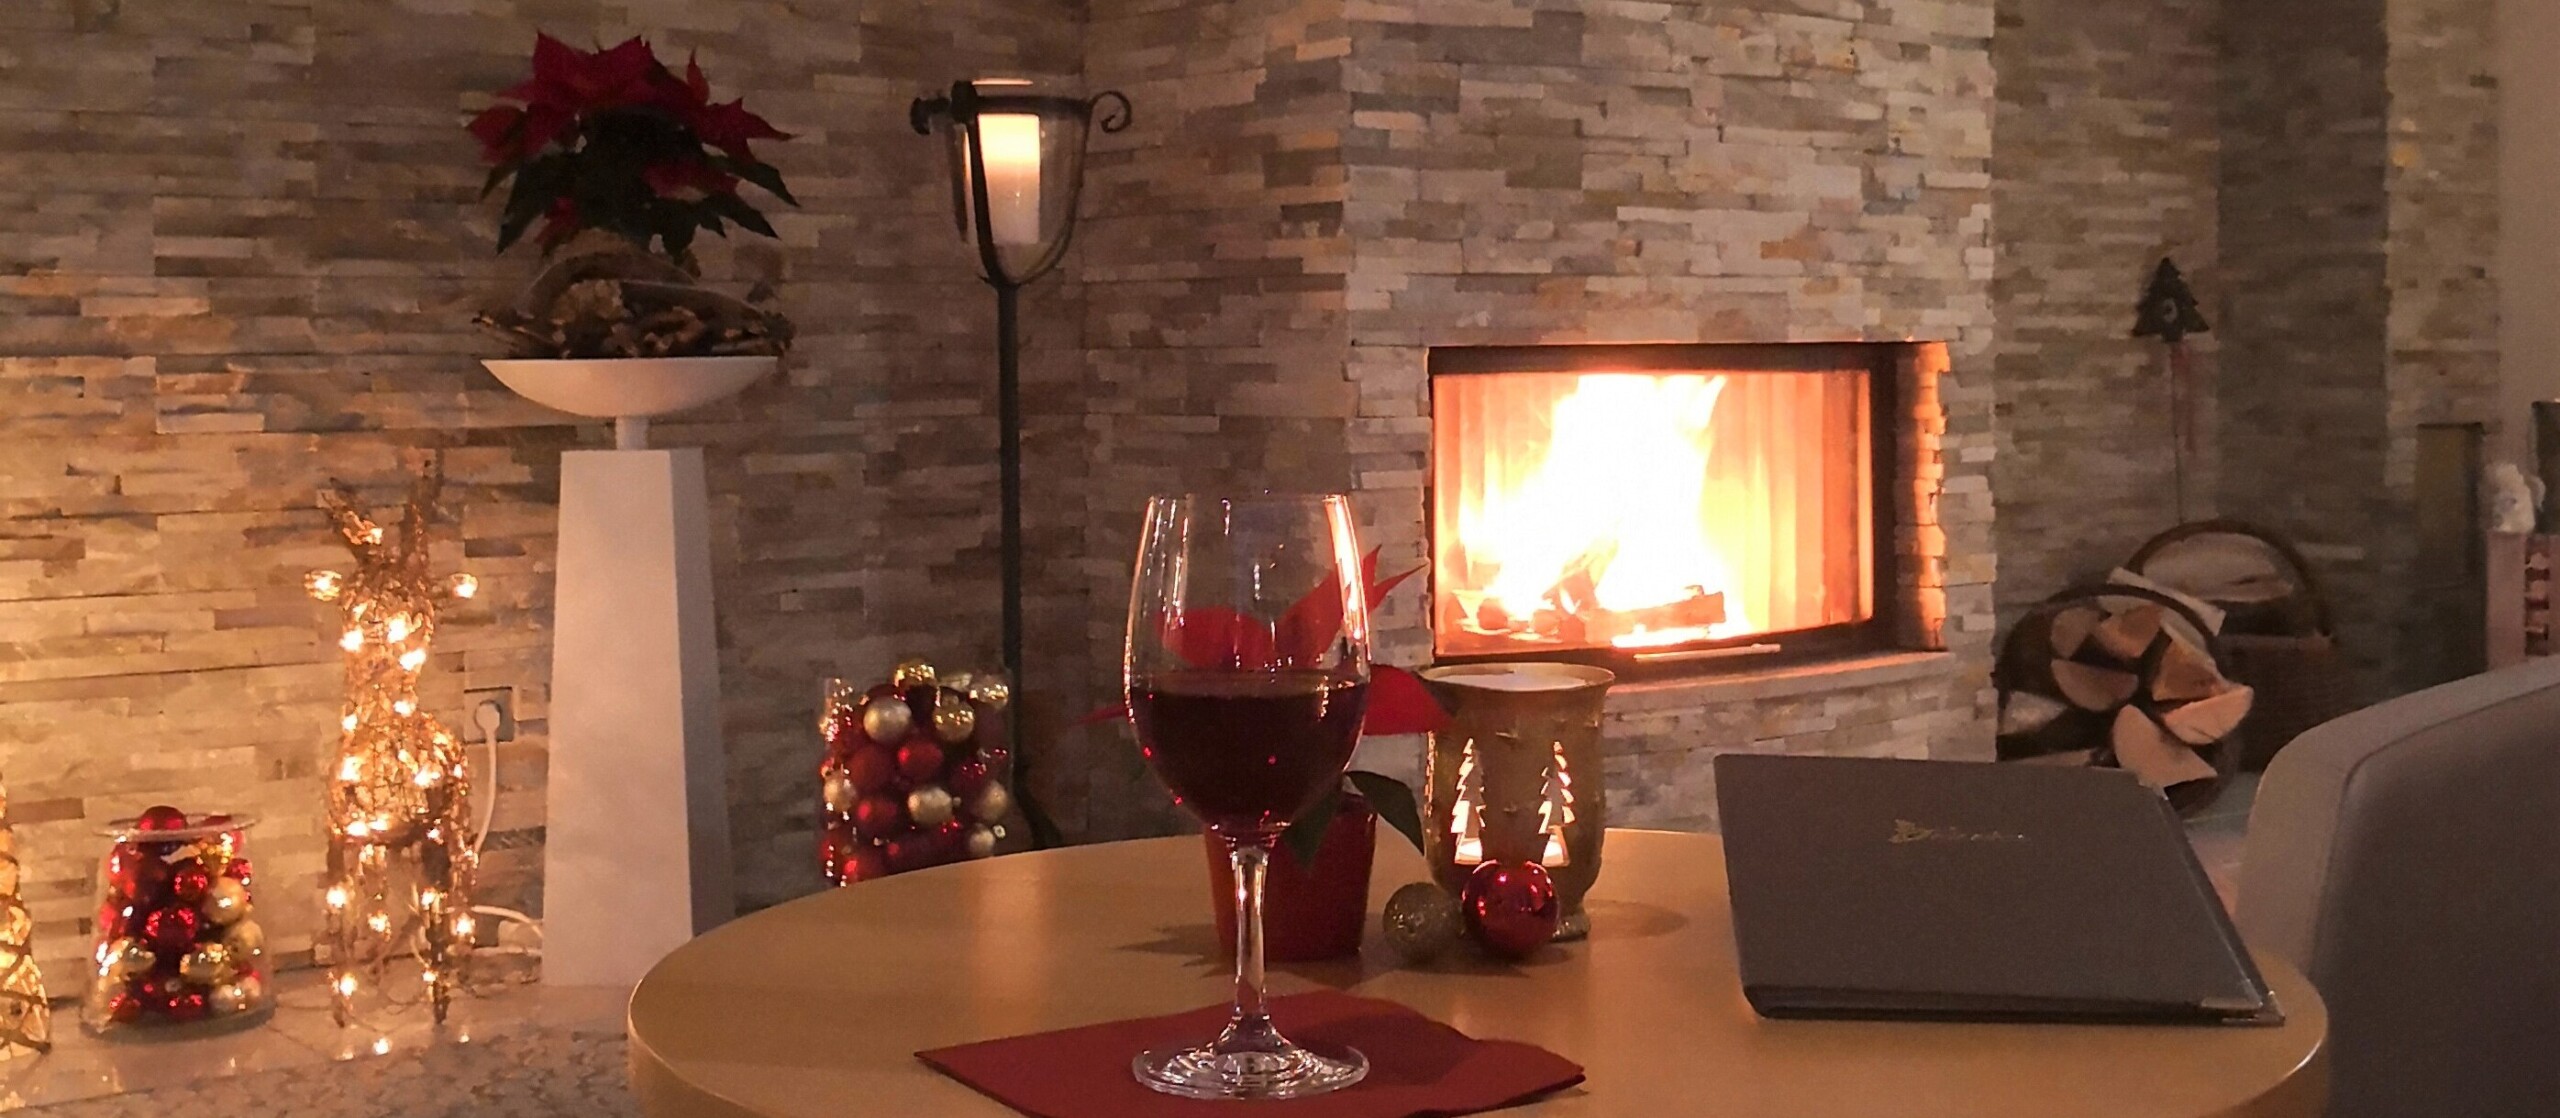 Tisch mit Weihnachtsdeko und Weinglas vor einem Kamin.